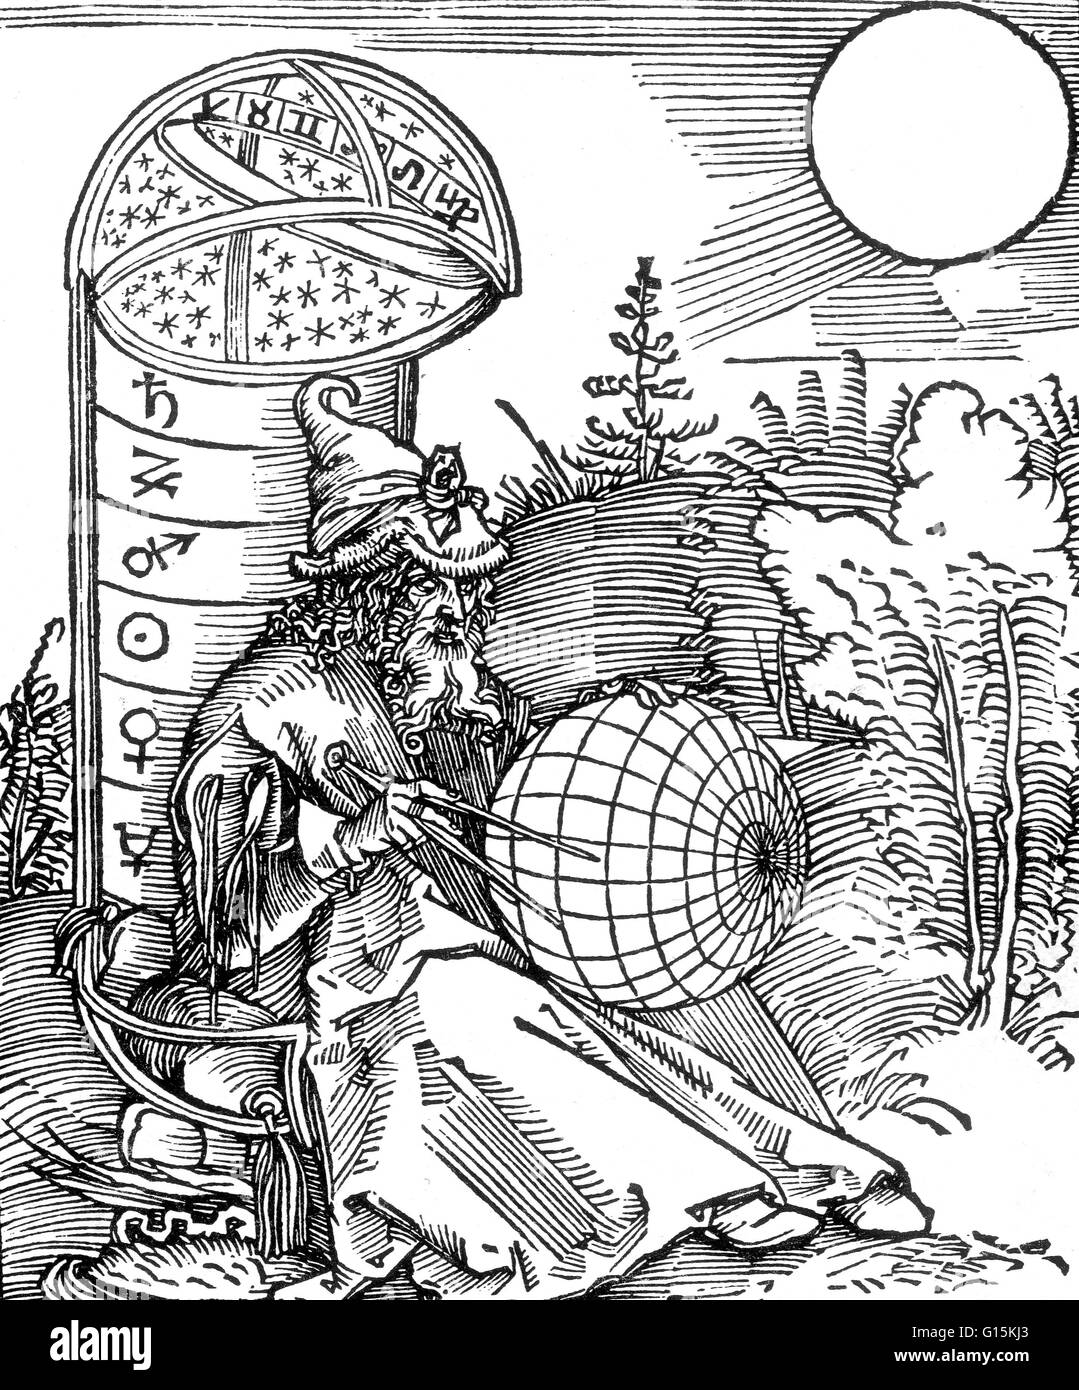 Una incisione di un astronomo di Albrecht Dürer, dalla pagina del titolo di Messahalah, De scientia motus orbis (1504). Come in molte illustrazioni medievali, la bussola di redazione qui è una icona di religione così come la scienza, in riferimento a Dio come architec Foto Stock